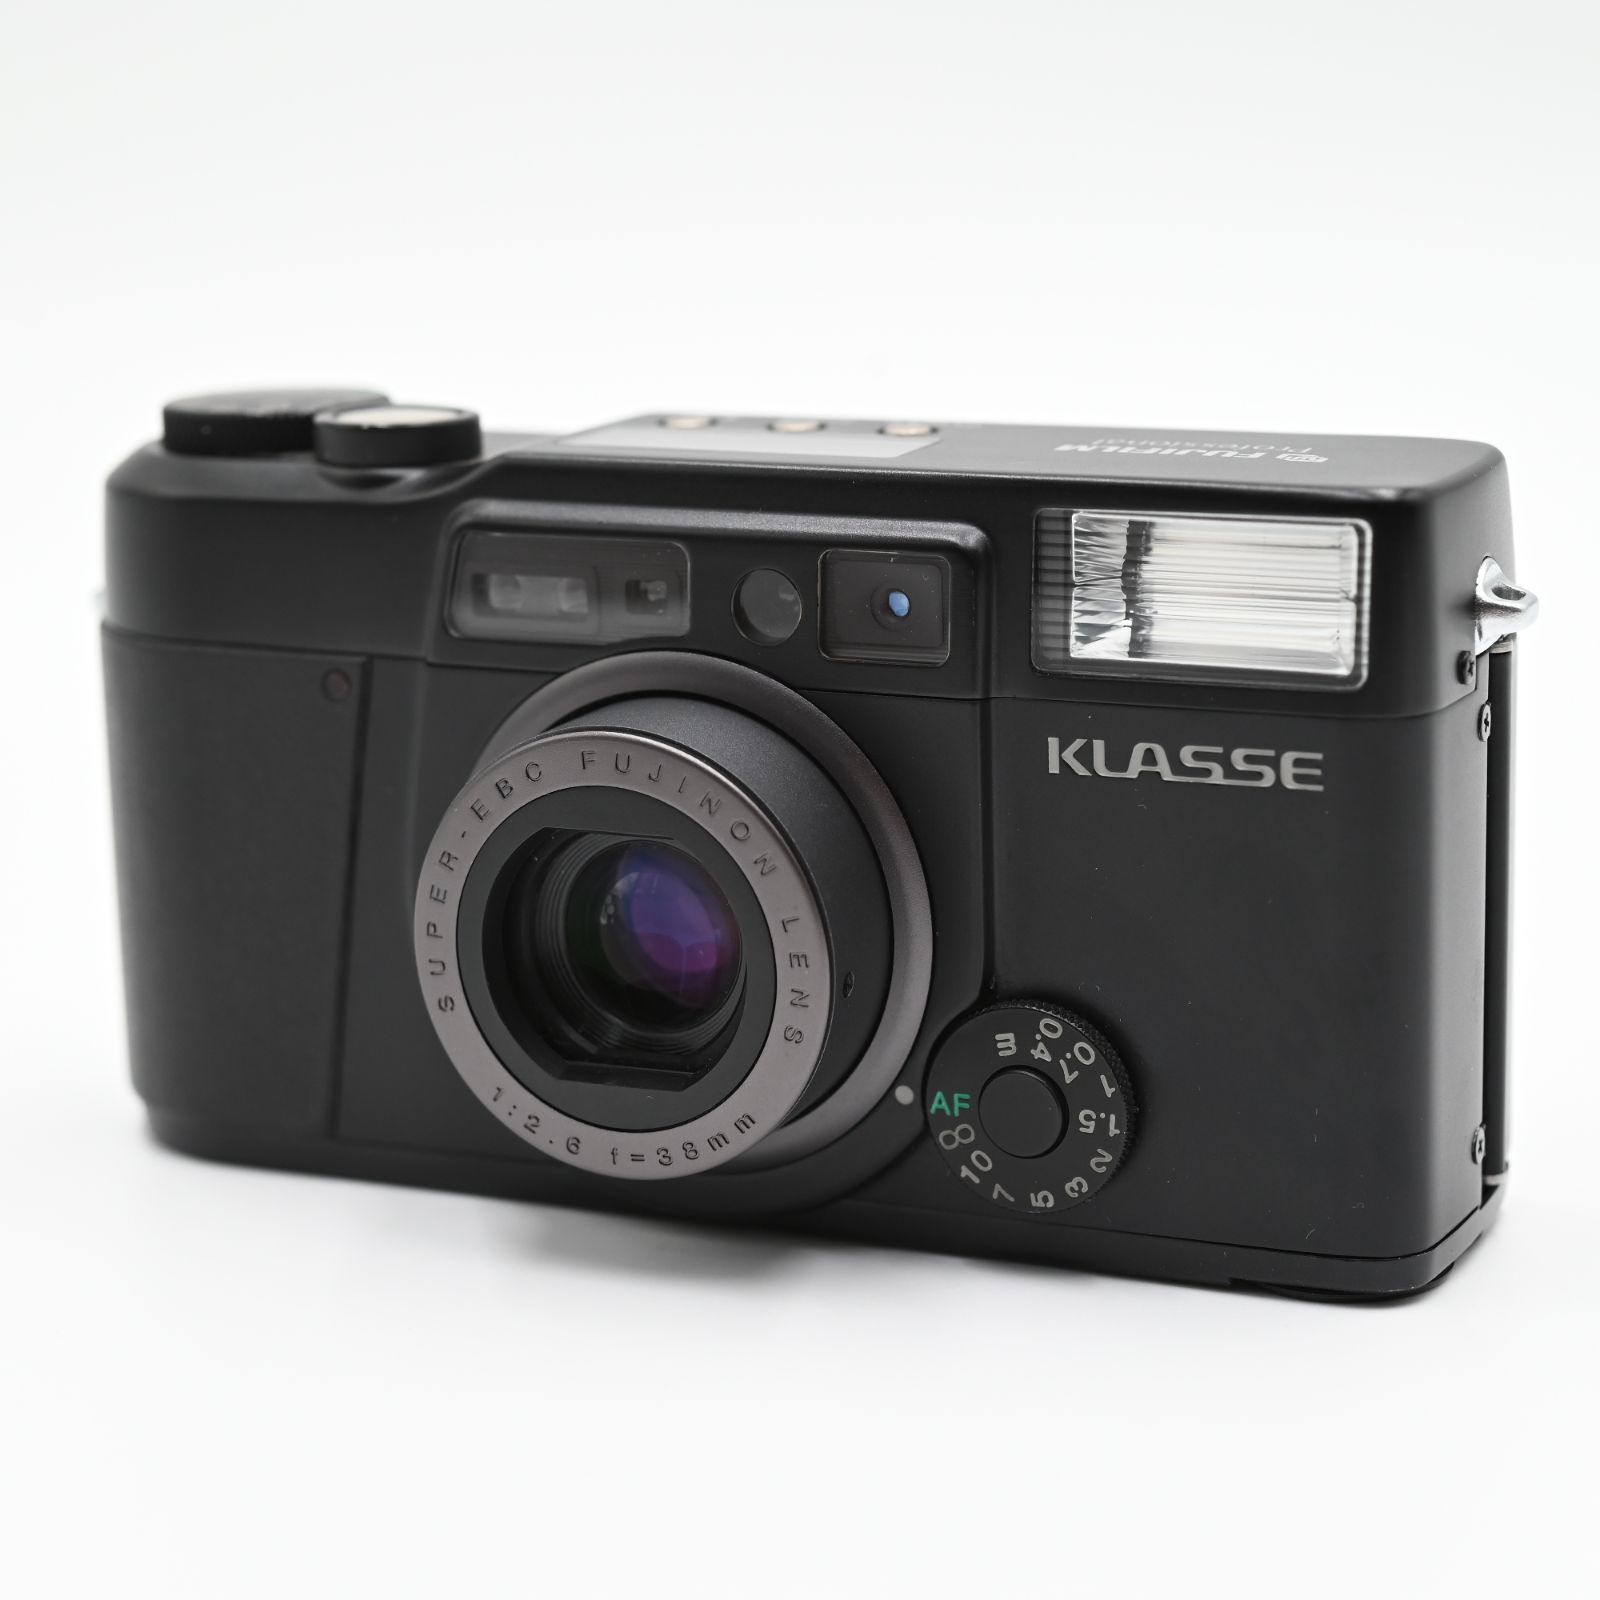 【新品級】【超レアフィルムカメラ】元箱専用ケース付き 初代 FUJIFILM KLASSE 35ｍｍコンパクトフィルムカメラ F2.6 38mm  Black #626